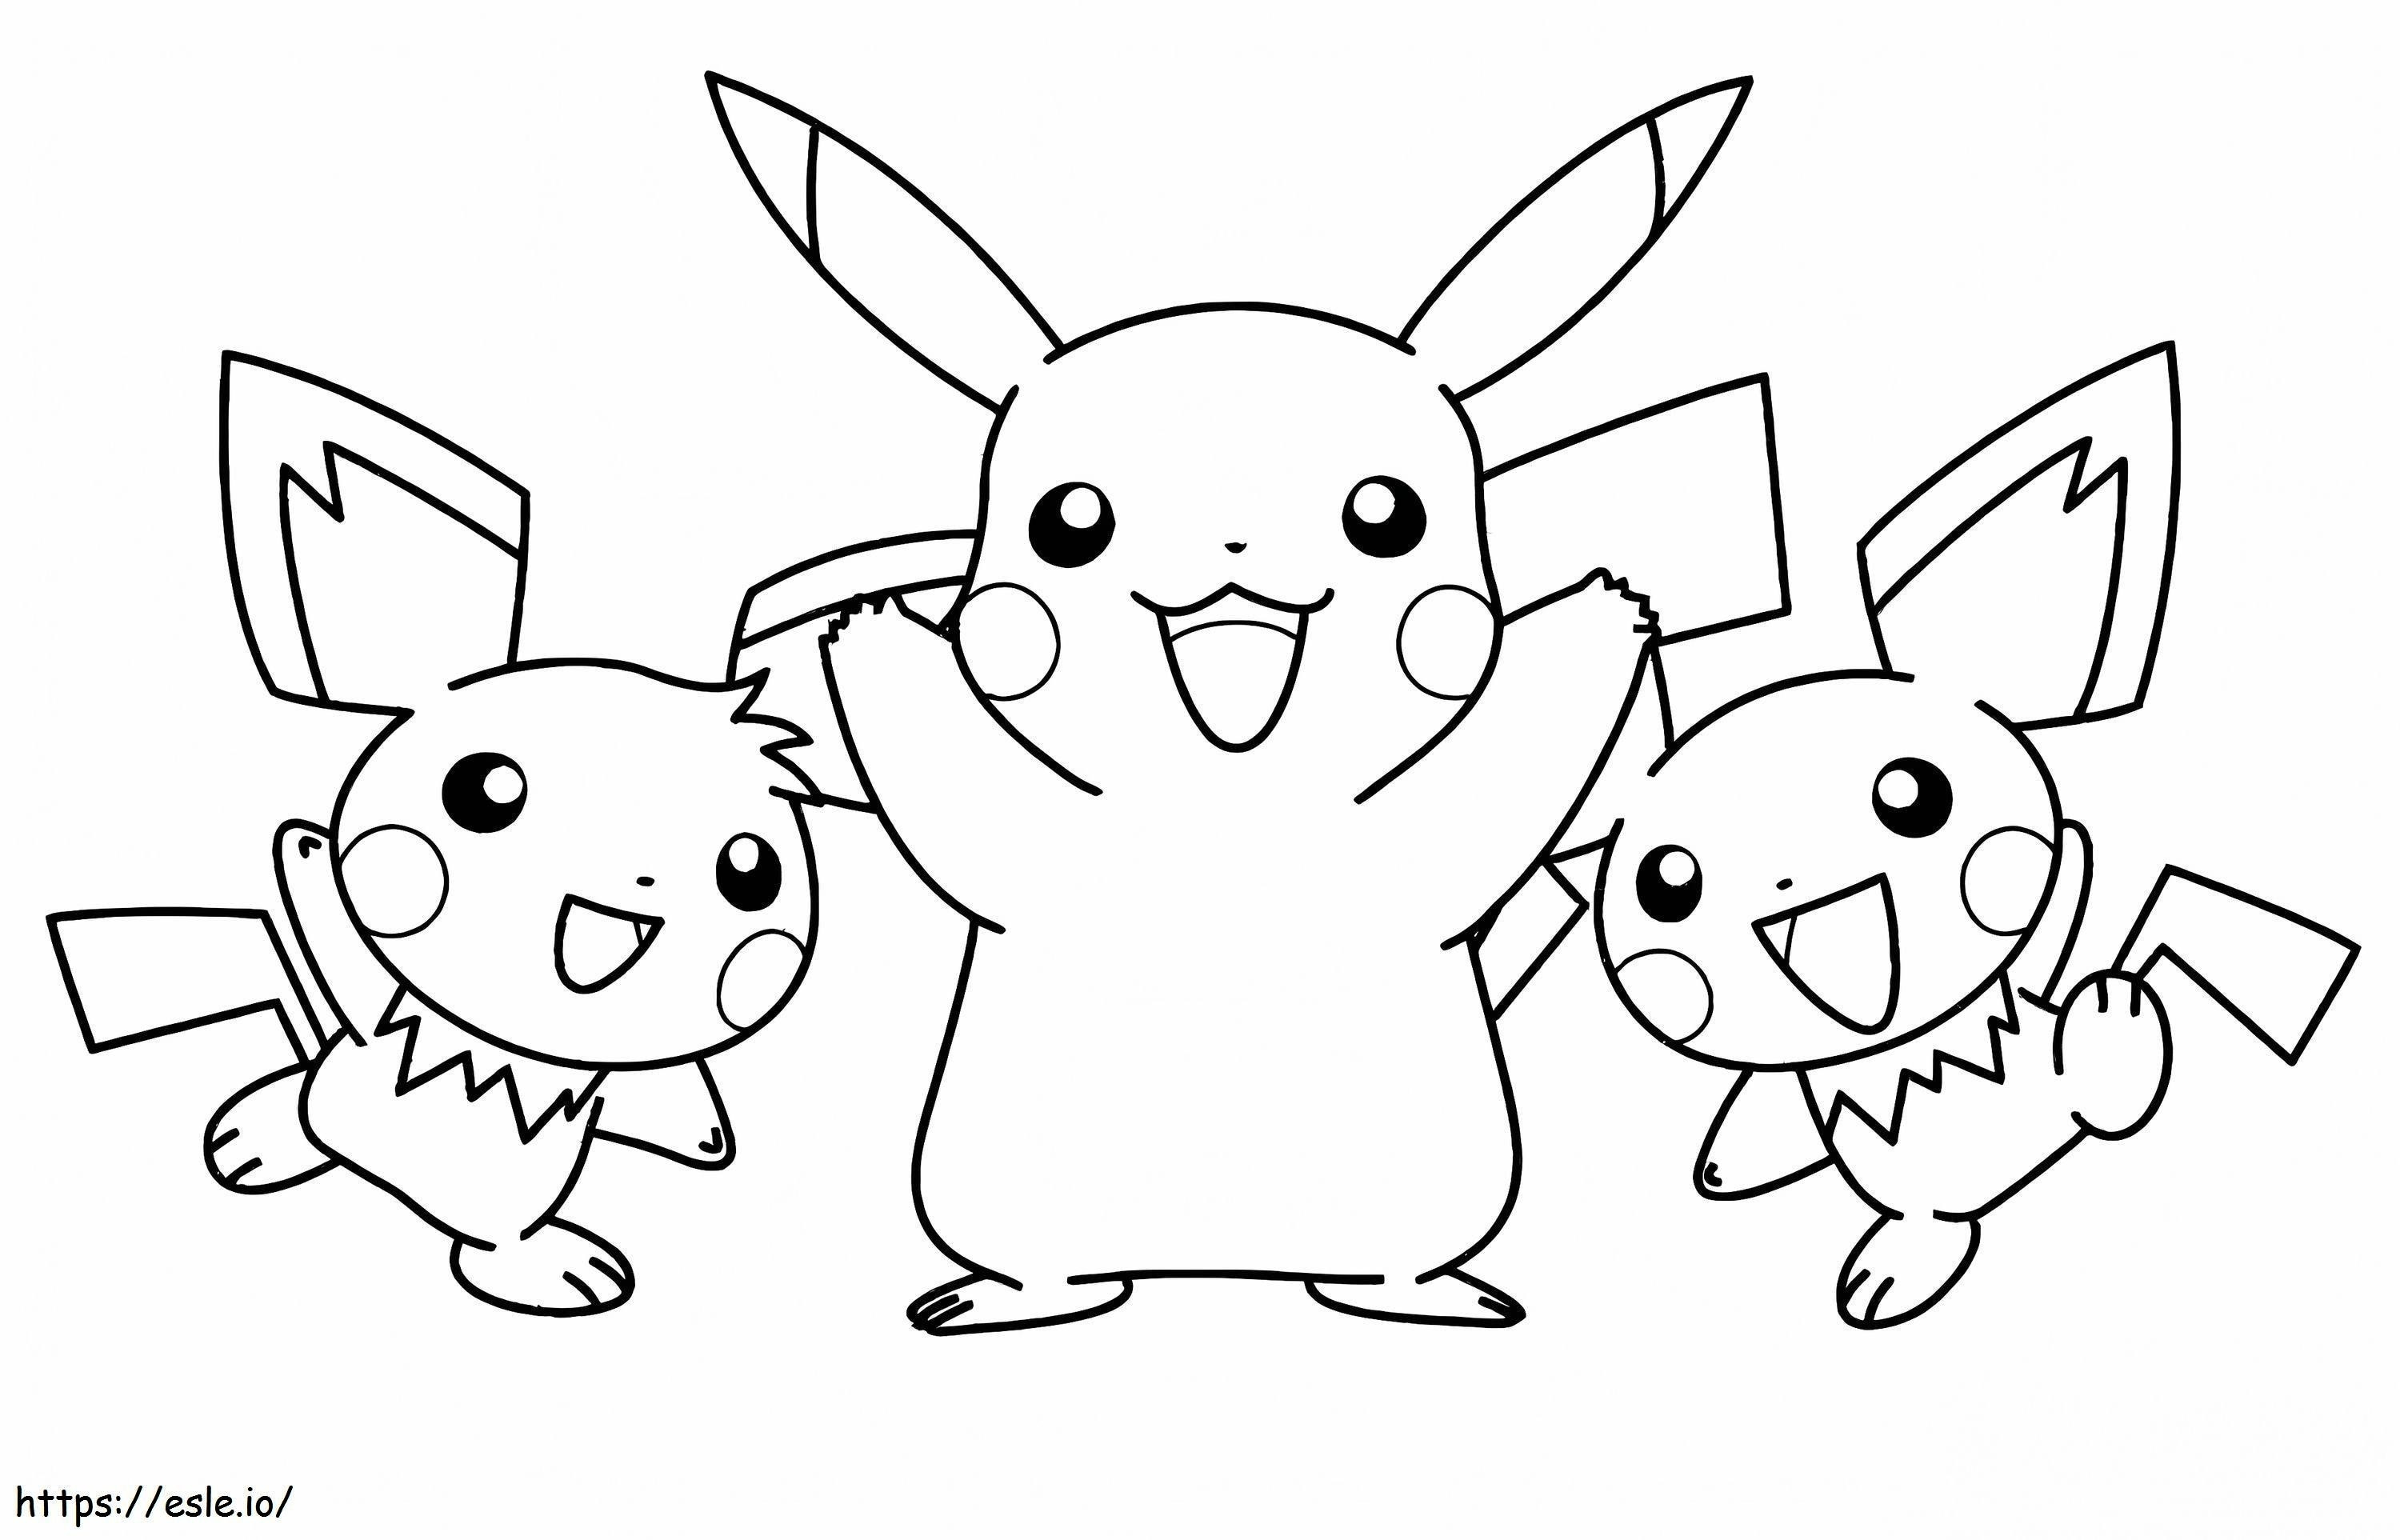 Coloriage Pikachu et ses amis à imprimer dessin